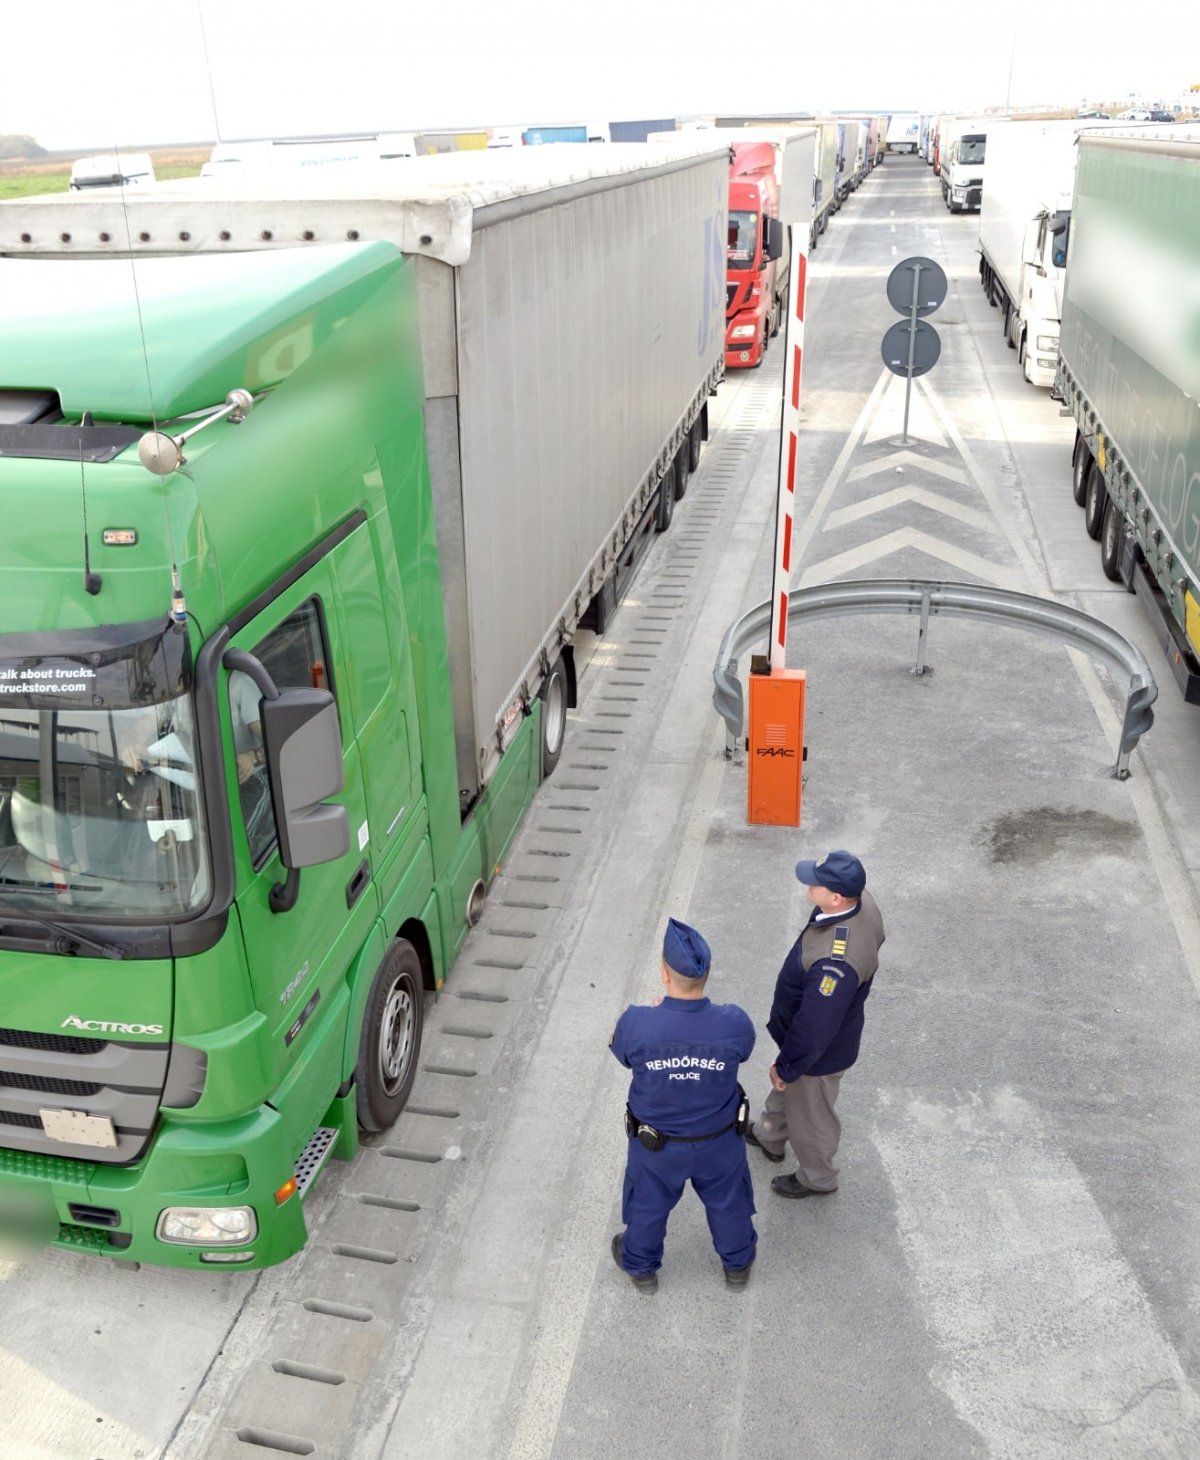 Rendszámtáblával trükköző román kamionsofőrt füleltek le a magyar hatóságok